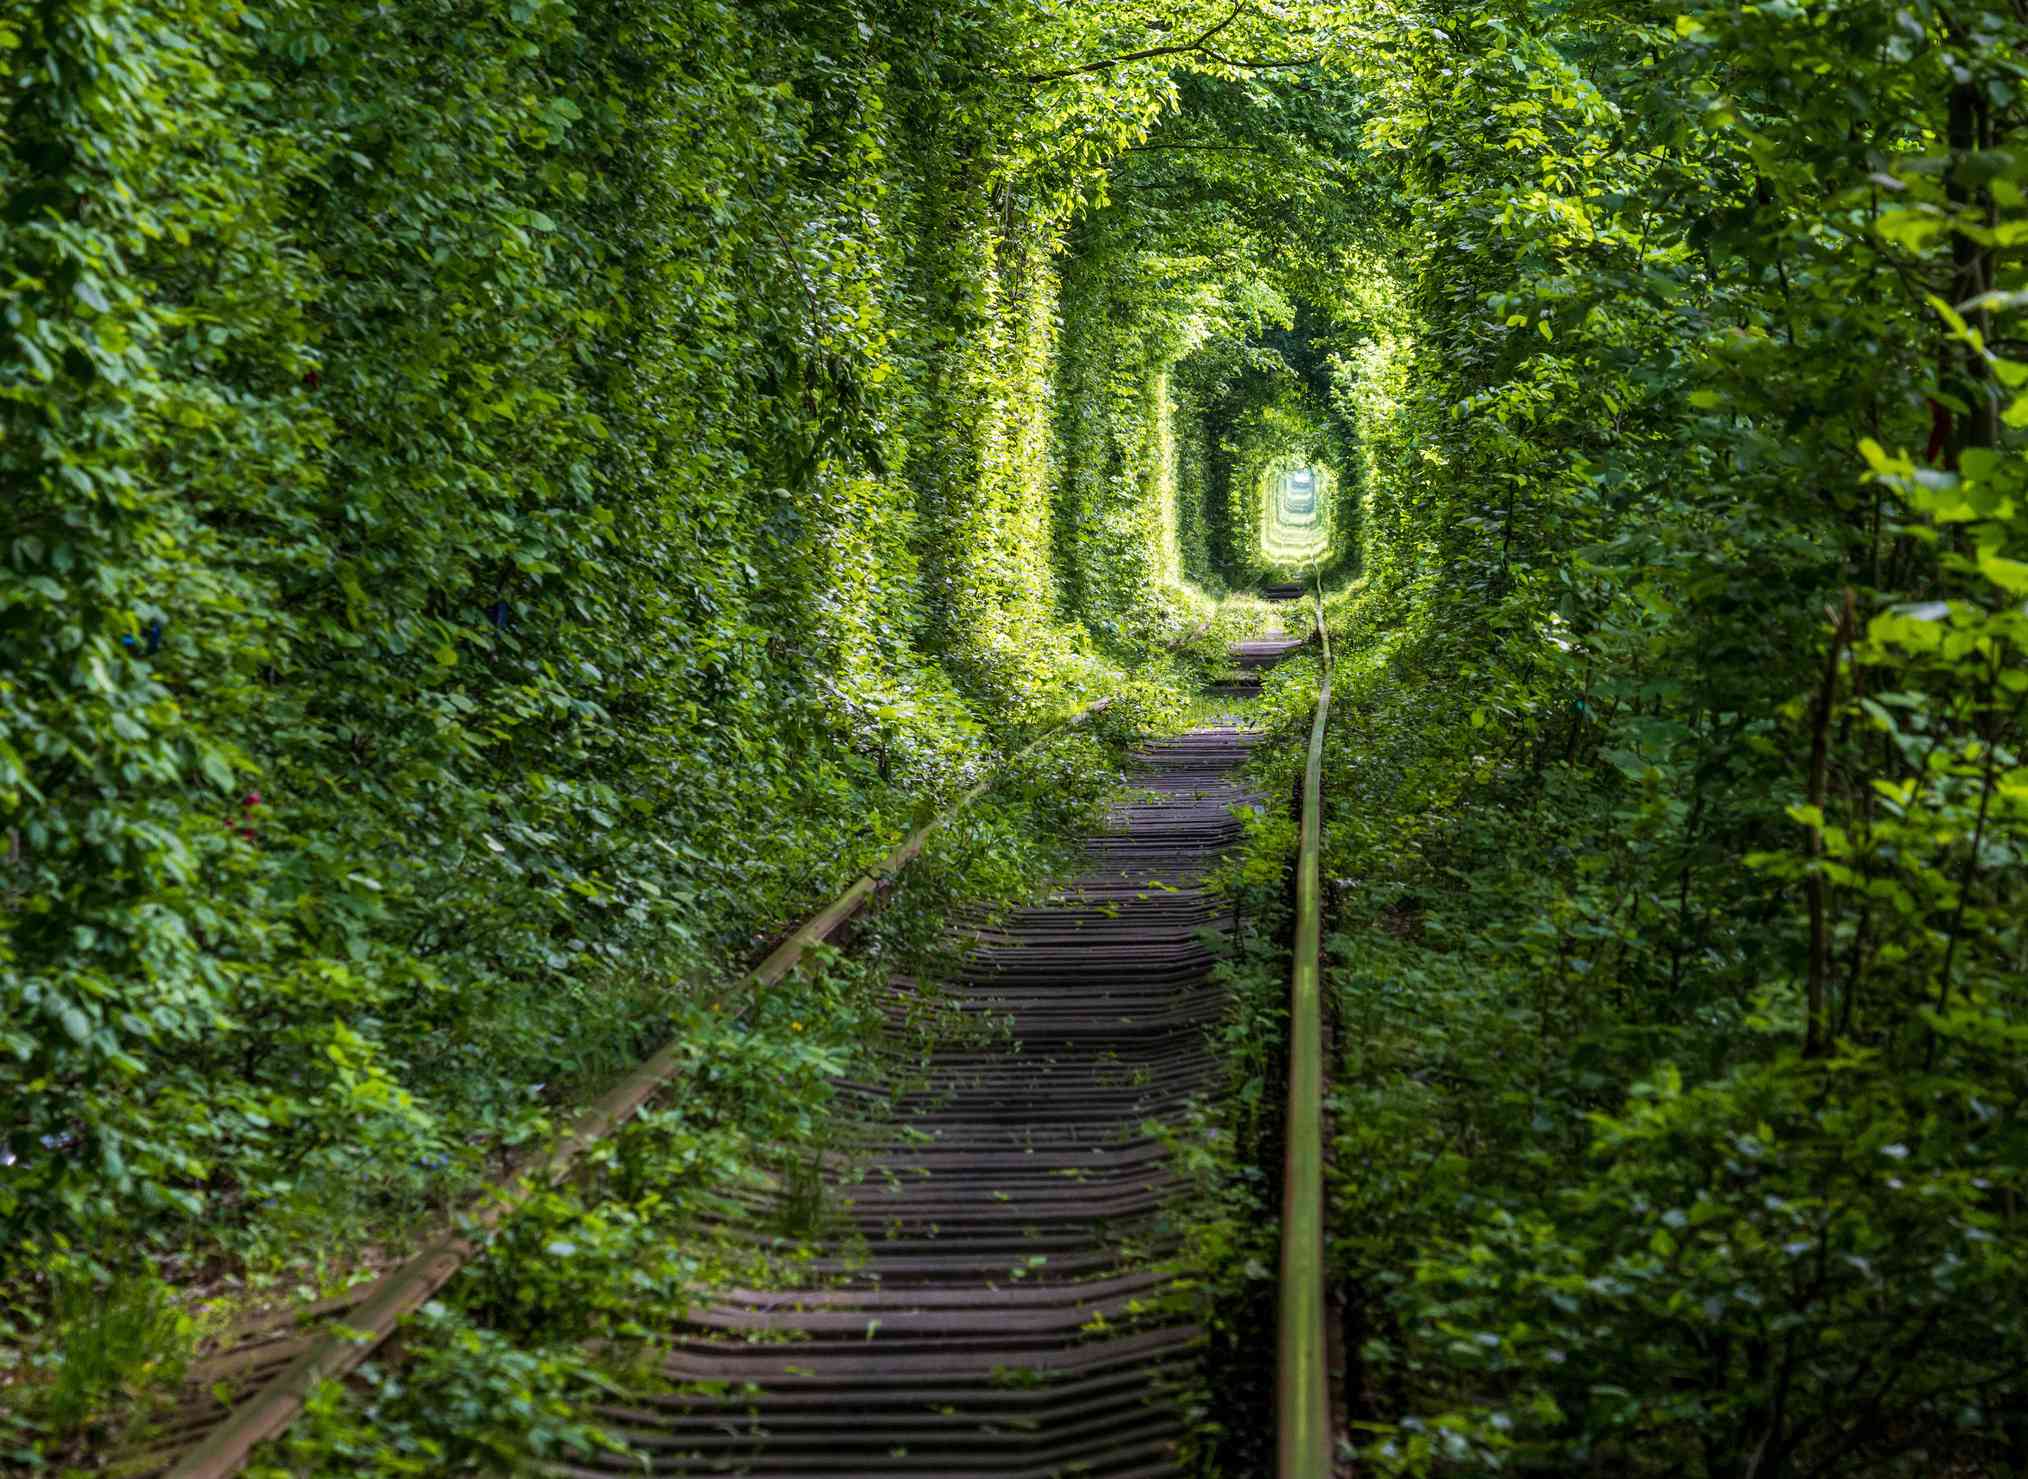 长着淡绿色叶子的树木为铁轨创造了隧道